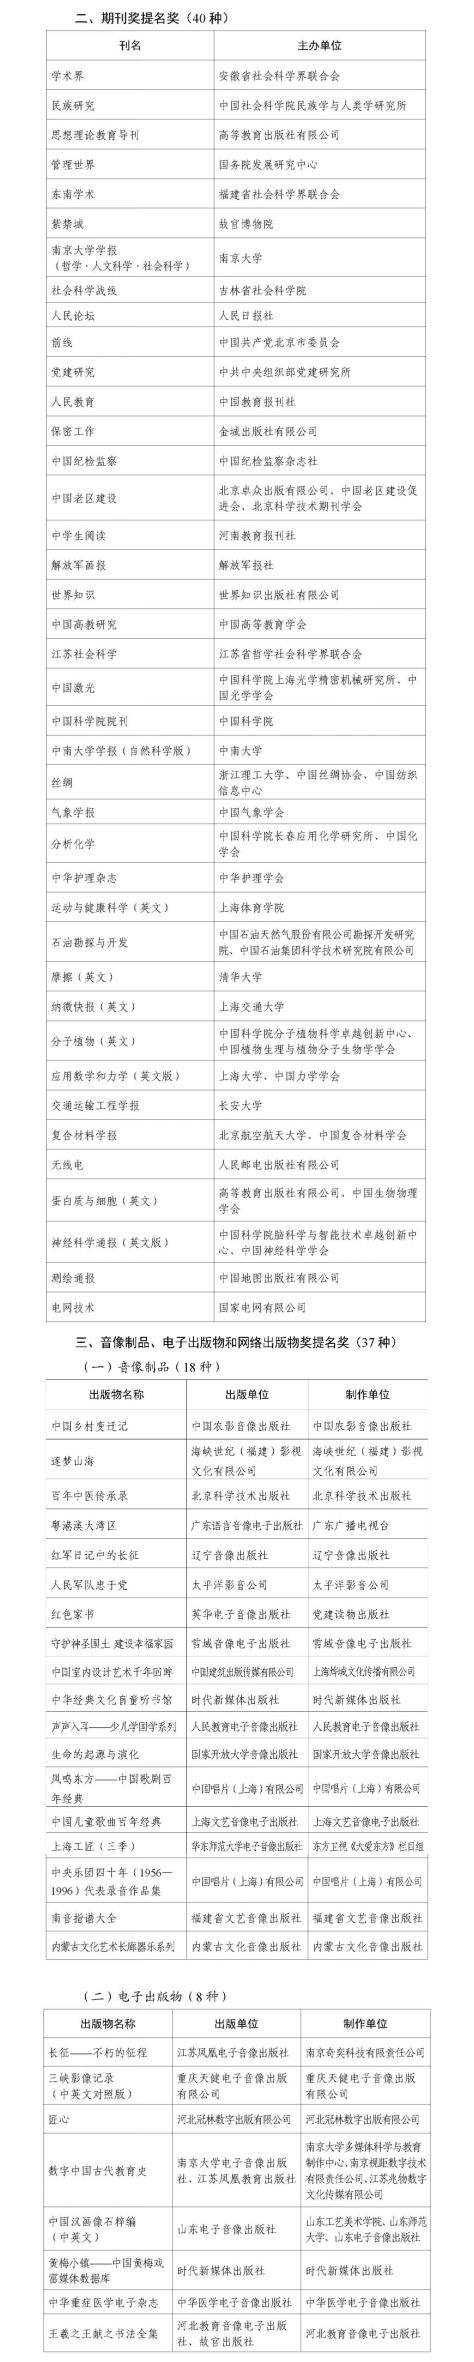 祝贺!湖南省这些单位和人物获第五届出版政府奖(图6)